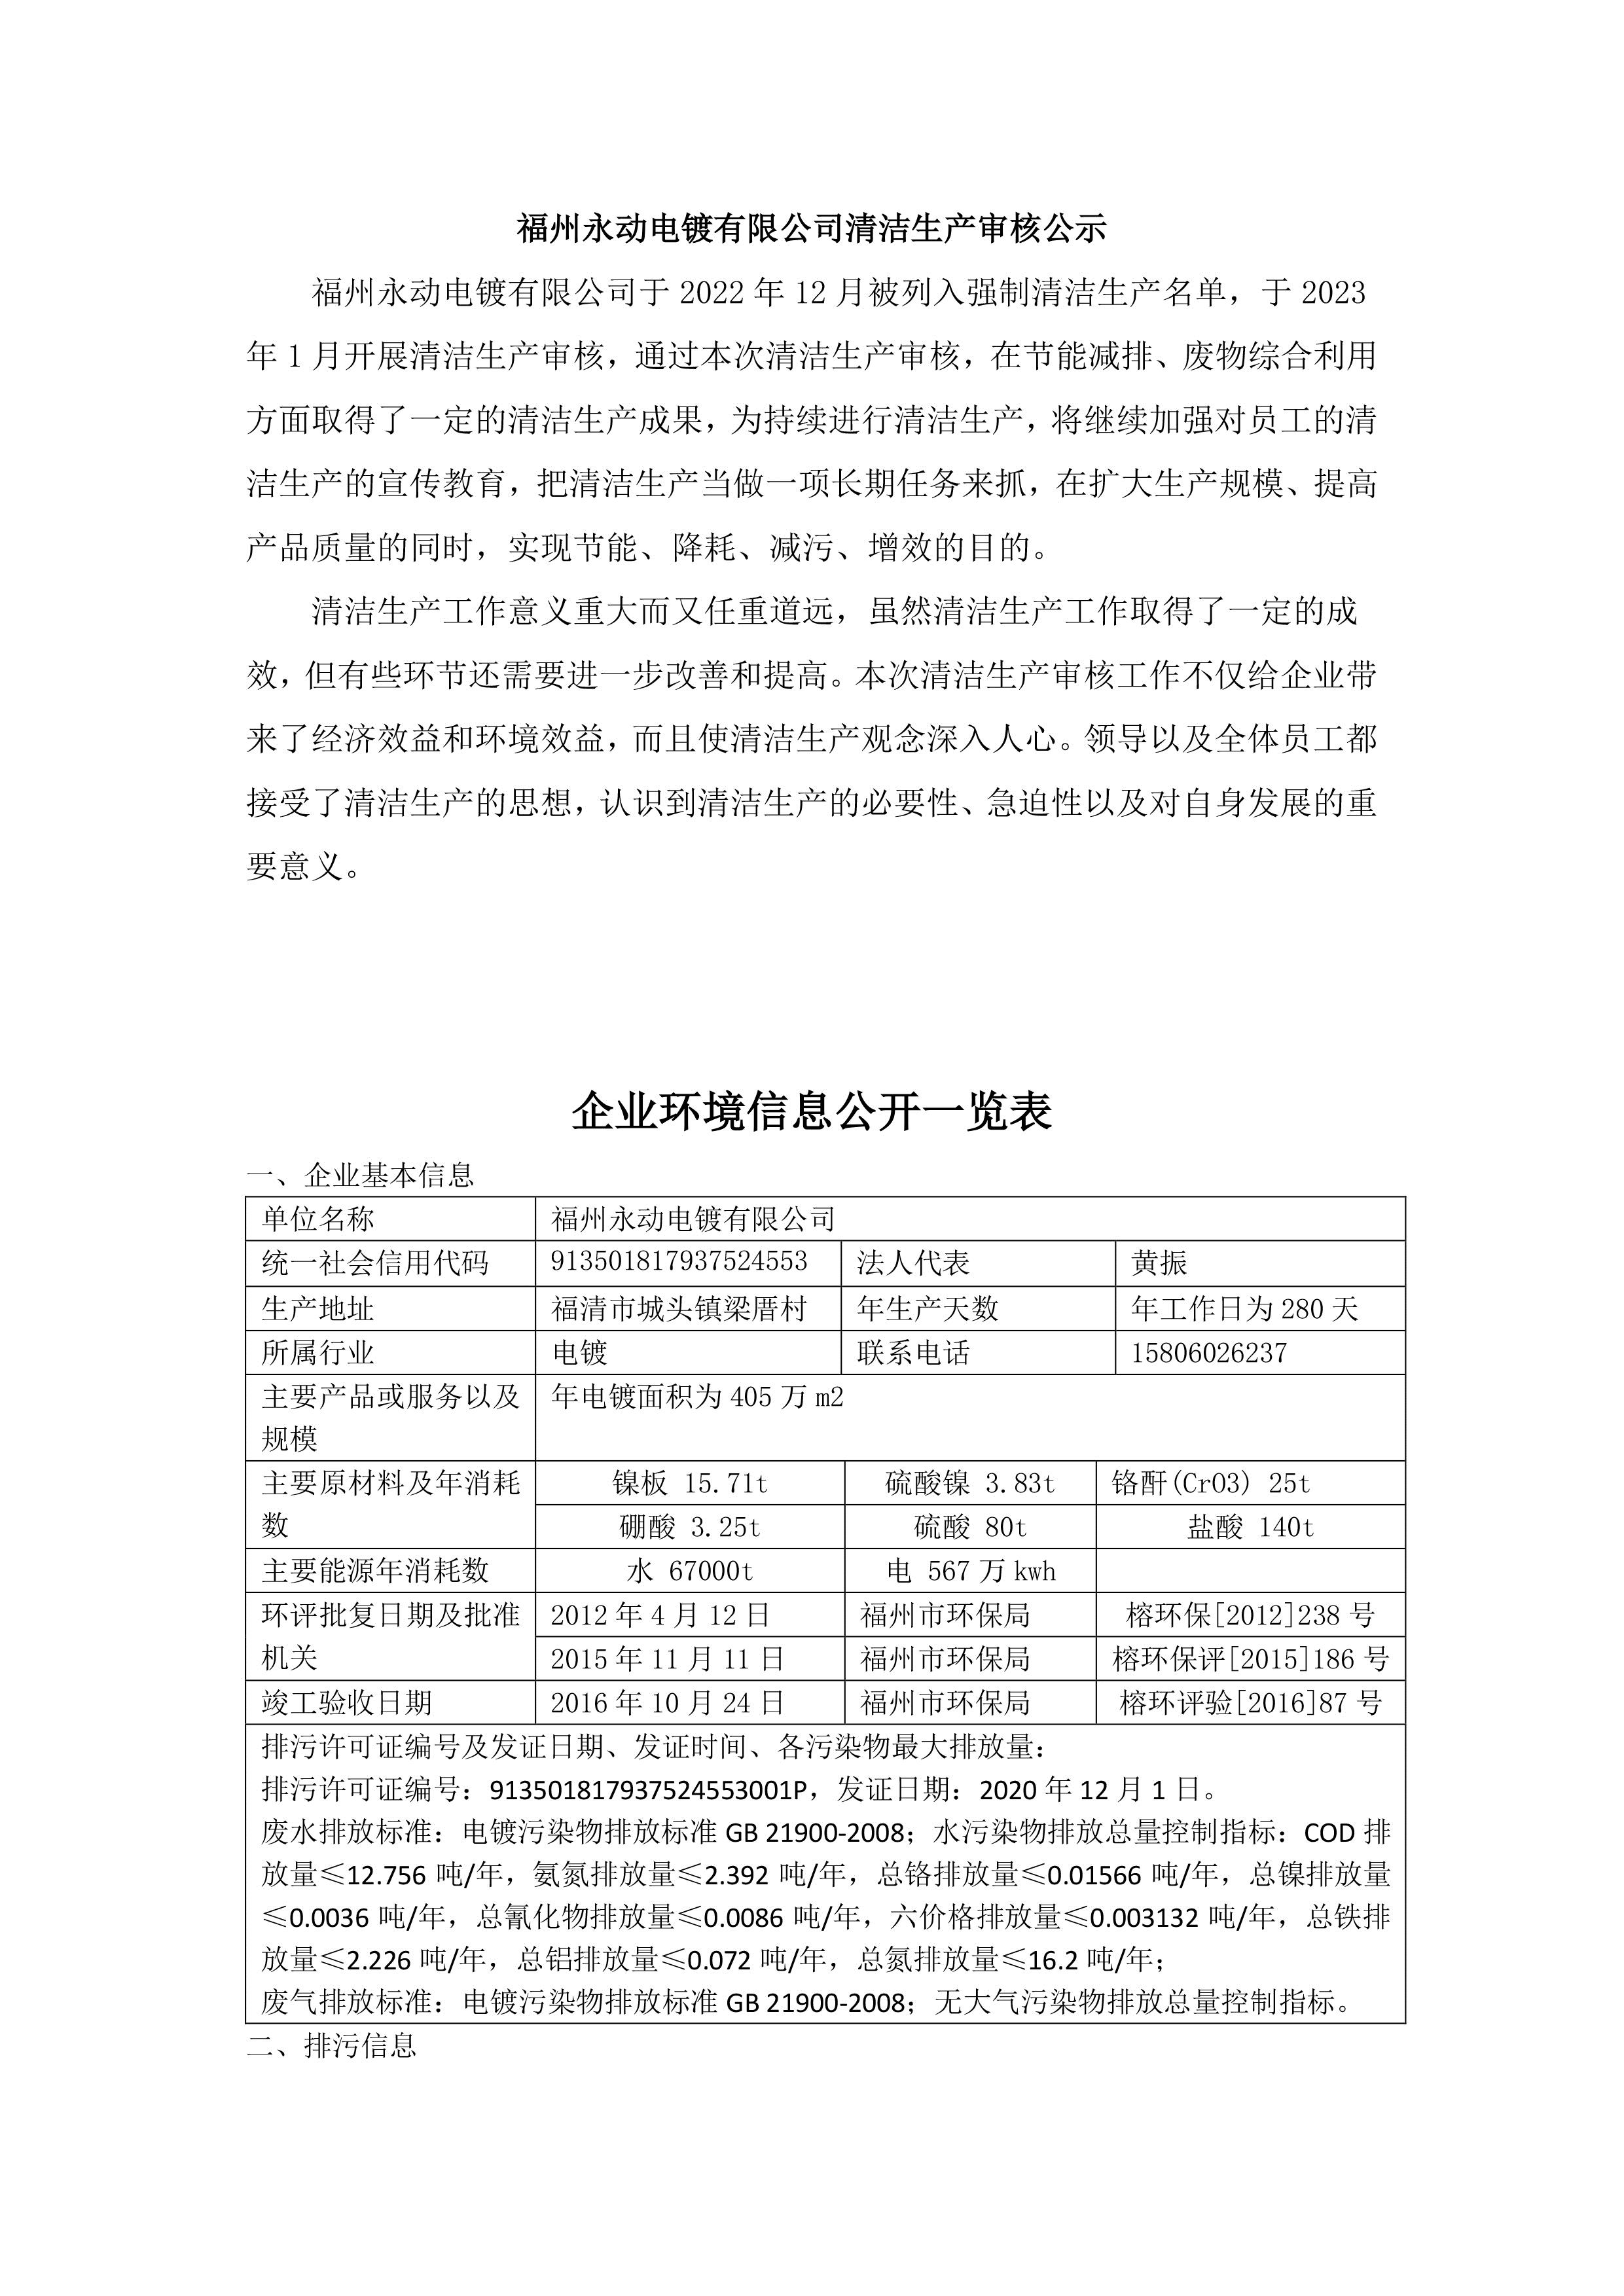 福州永動電鍍有限公司清潔生產審核公示